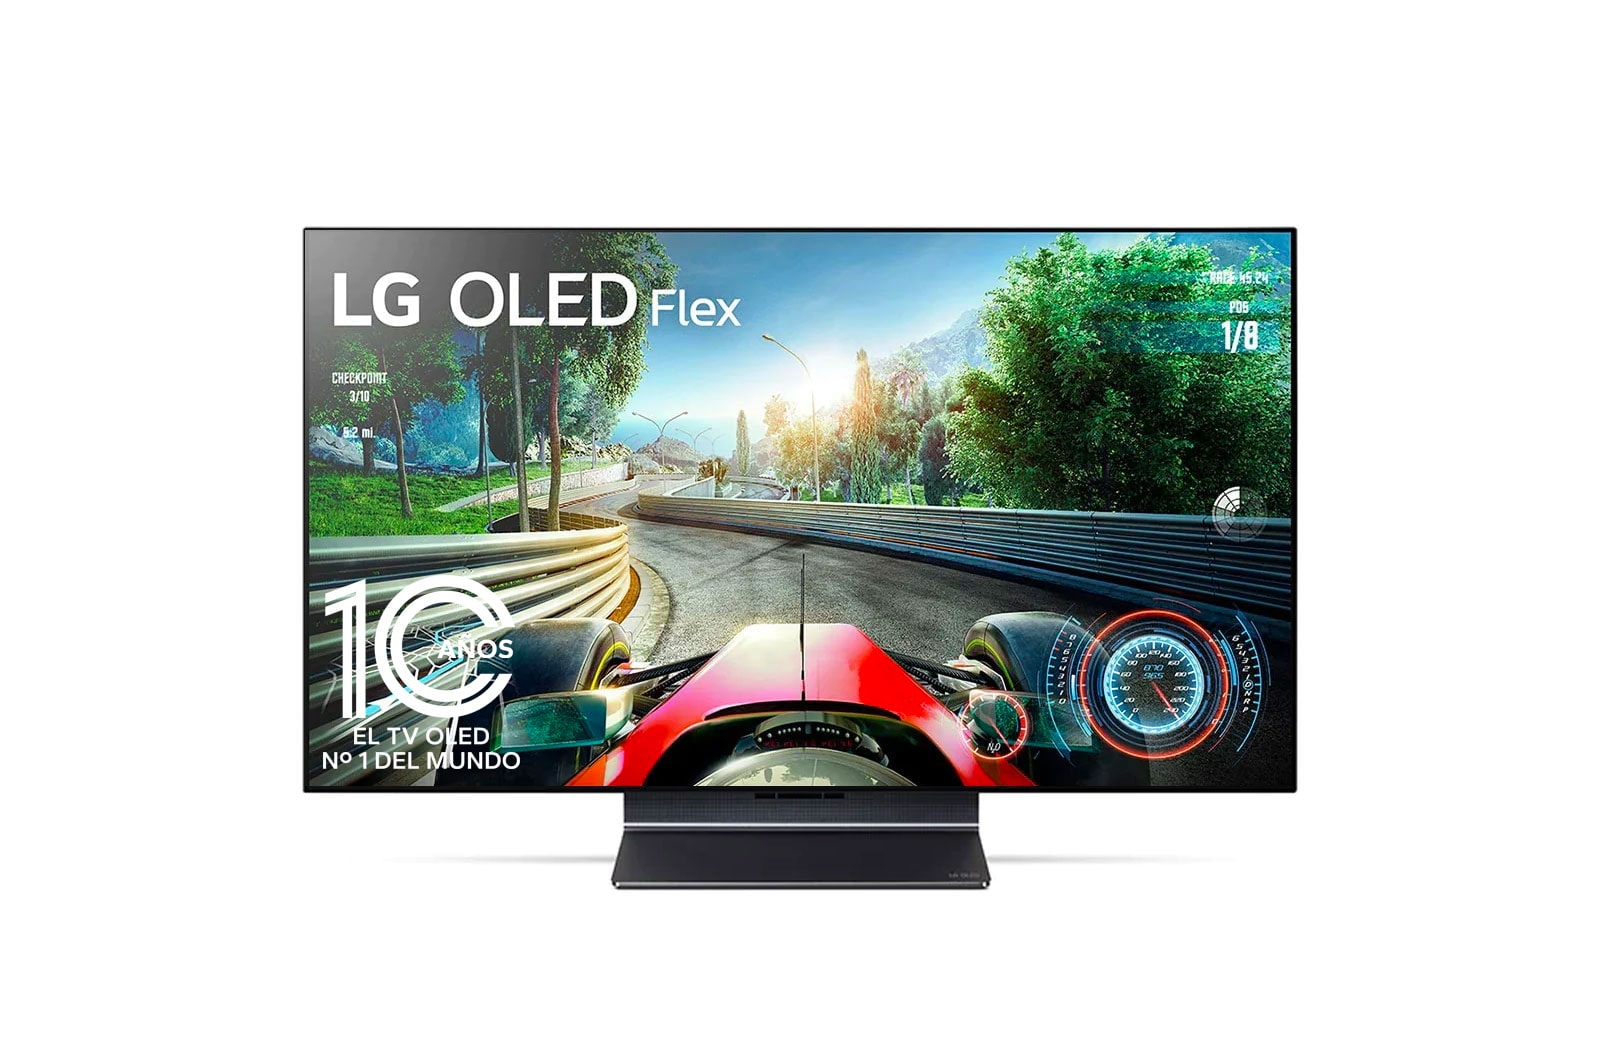 LG Televisor LG 42 Pulgadas OLED FLEX | 4K | Procesador IA α9 | Pantalla flexible | Incluye Magic Remote, 42LX3QPSA